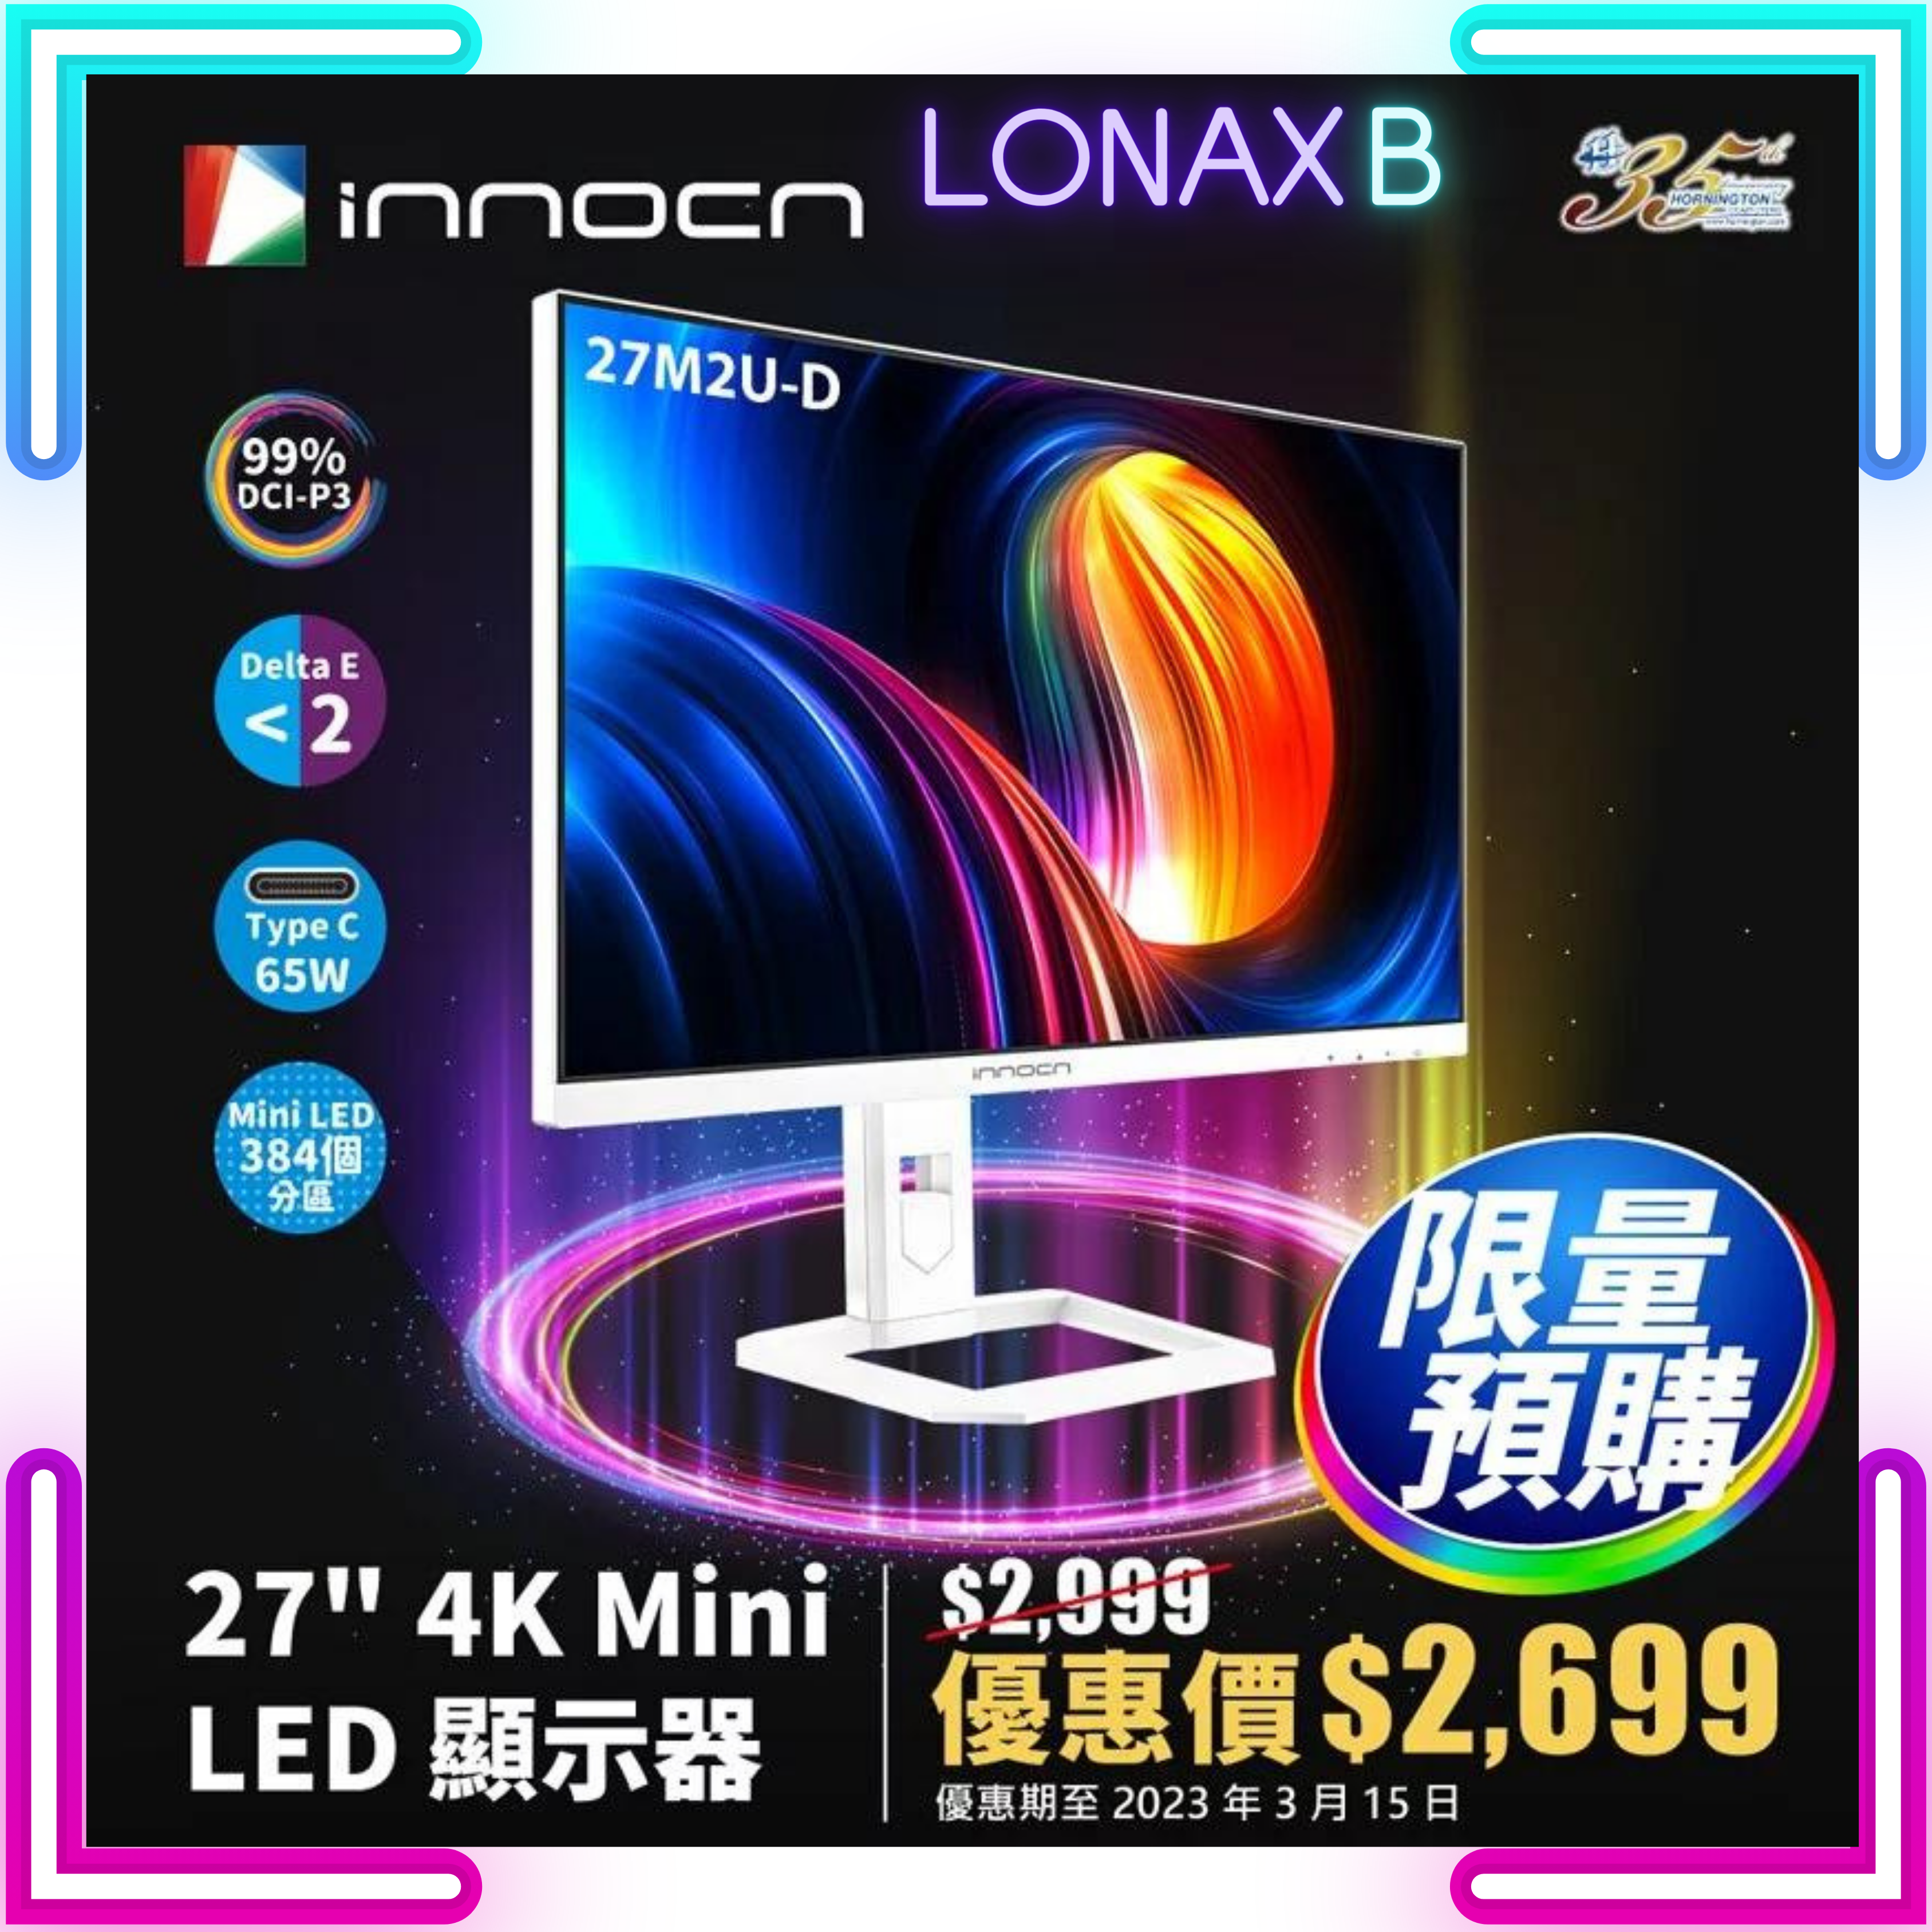 INNOCN 27M2U-D 專業顯示器 (27吋 / UHD / 60Hz / Mini-LED / IPS / HDR / Type-C 65W / 內置喇叭) - 3840 x 2160  3年上門保養